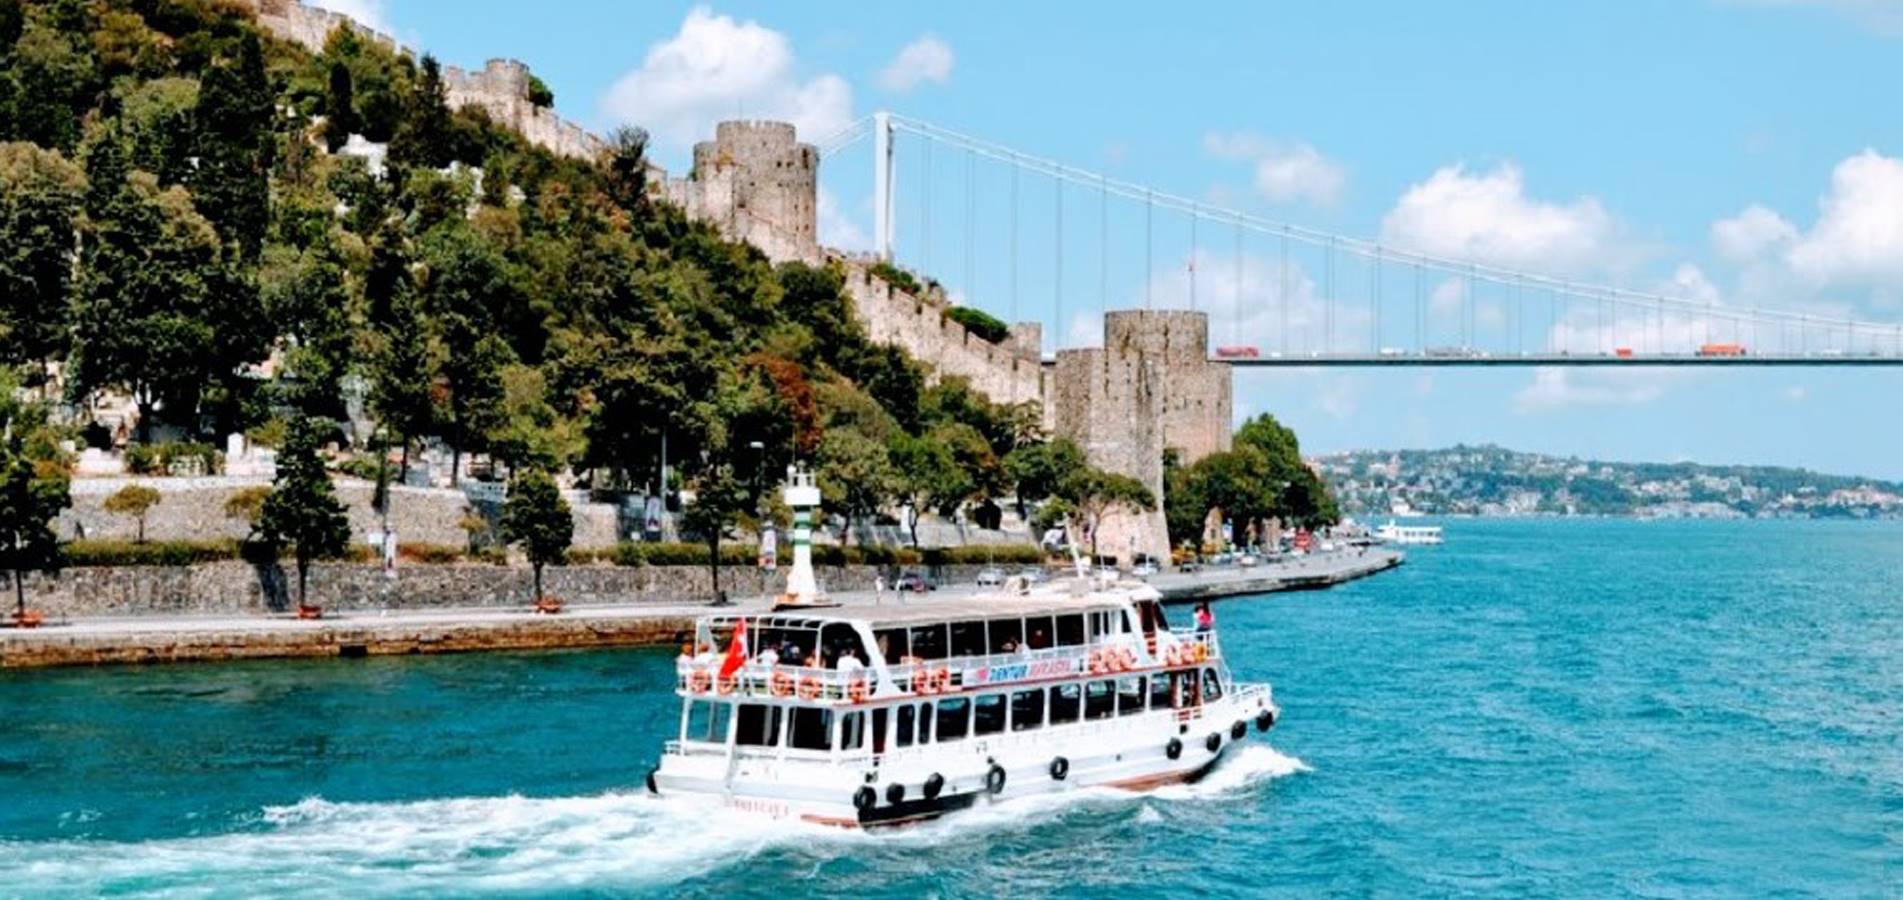 السياحة في تركيا 2021: شركة مقام للسياحة - جوله صباح اسطنبول